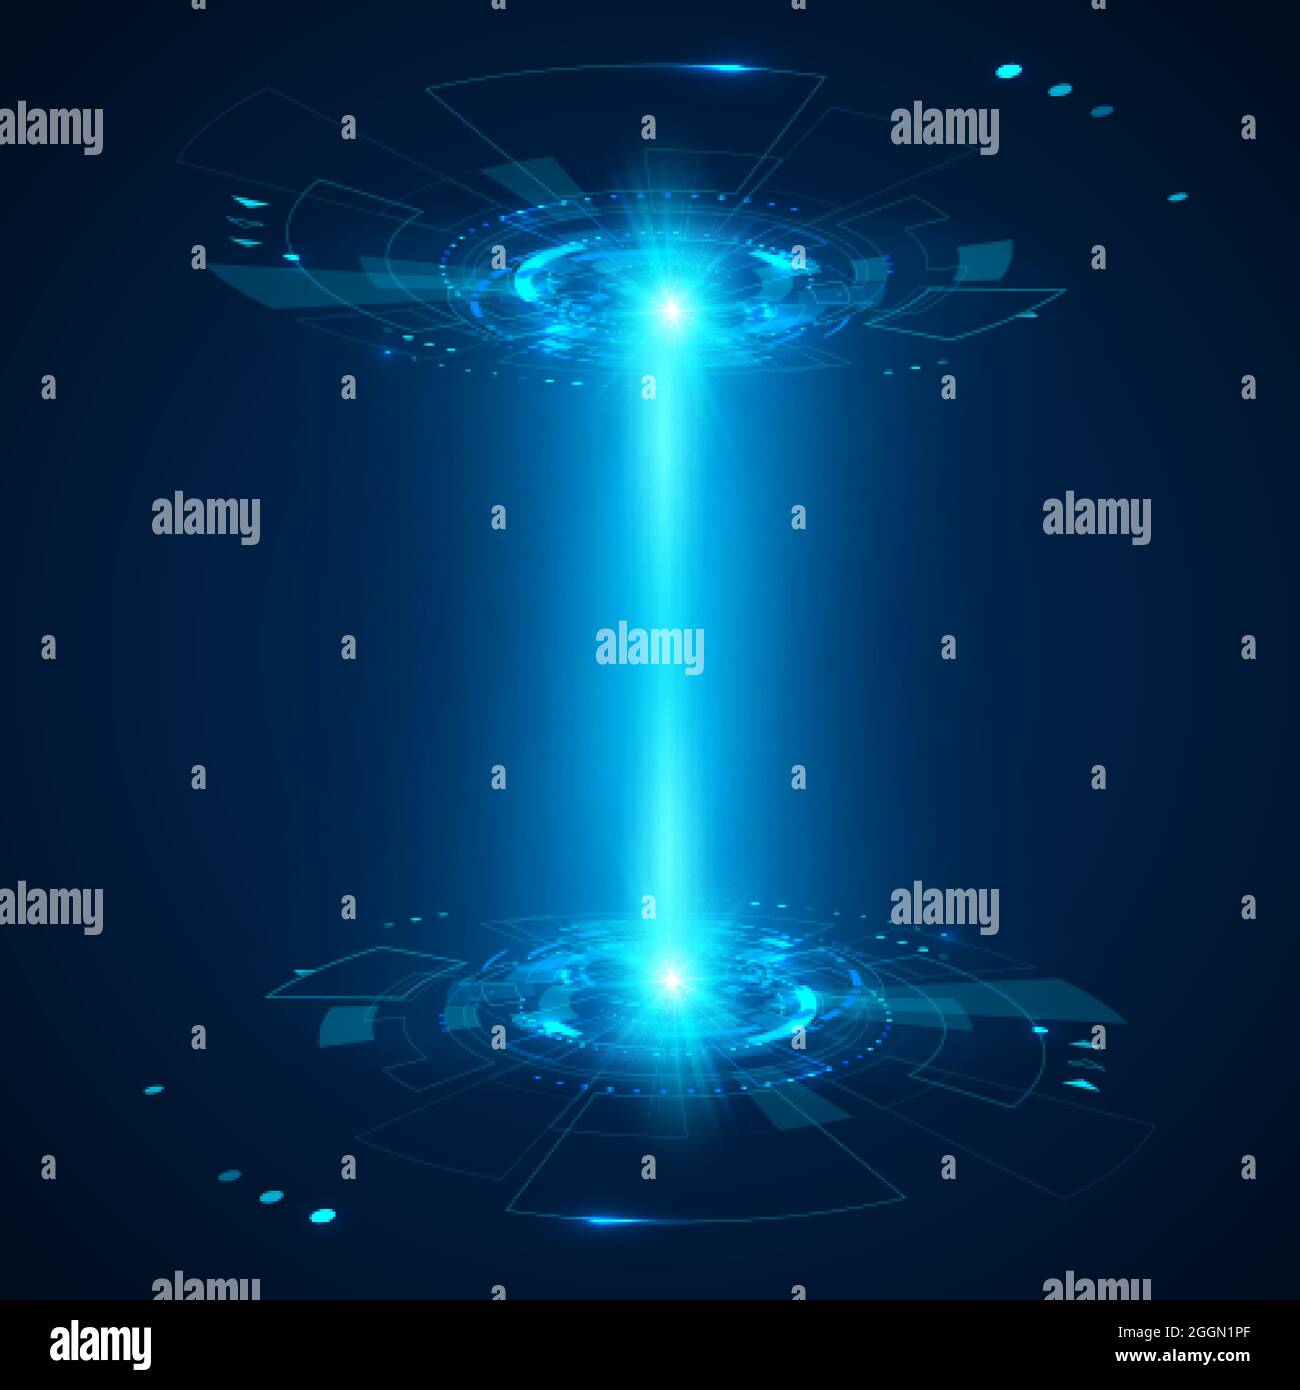 3d hologram immagini e fotografie stock ad alta risoluzione - Alamy